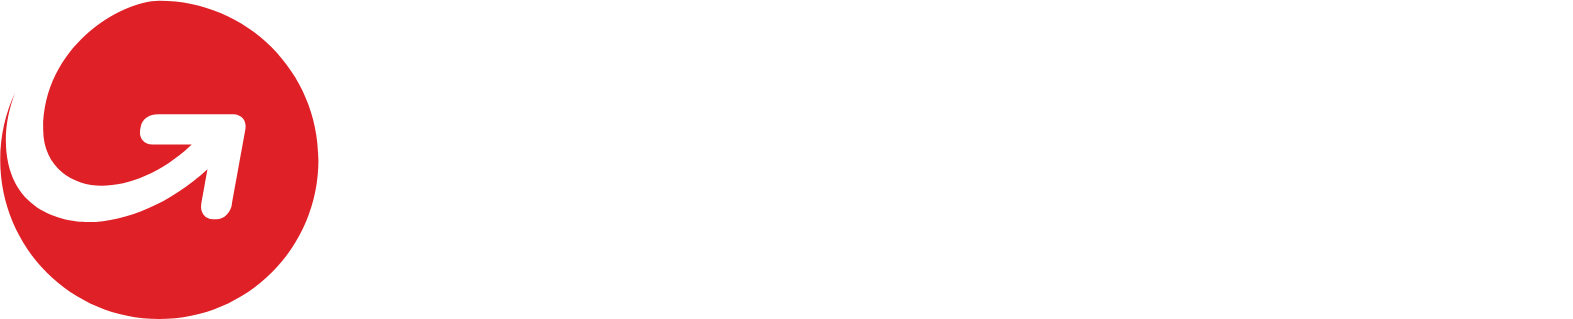 MoneyGram logo large for dark backgrounds (transparent PNG)